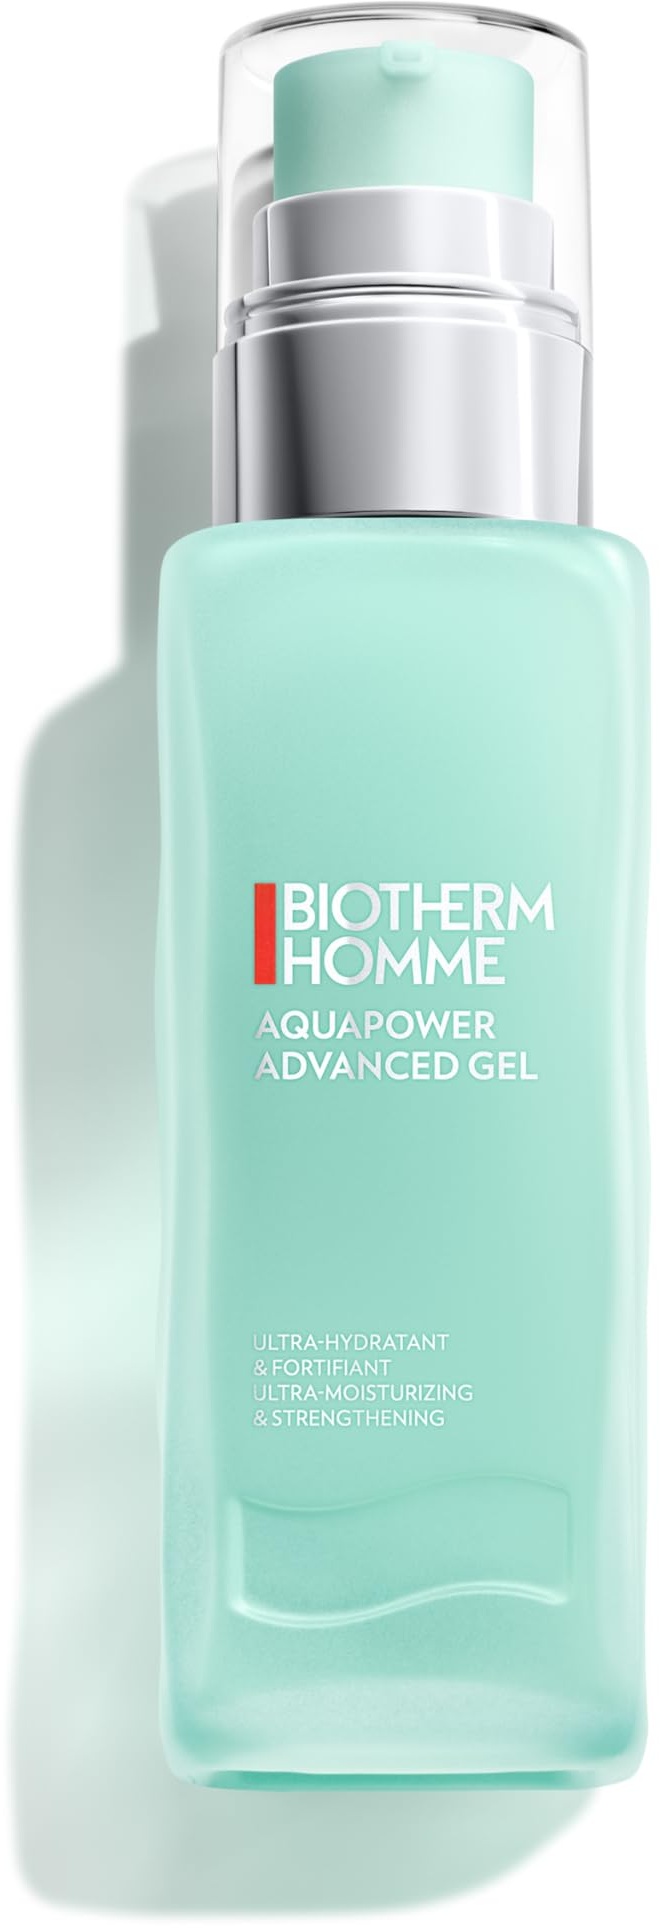 Biotherm Homme Aquapower Advanced Gel, mit Life Plankton und Oligo-Mineralien, erfrischendes Gesichtsgel für Männer, intensive Tagespflege für vitalisierte Haut, 75 ml